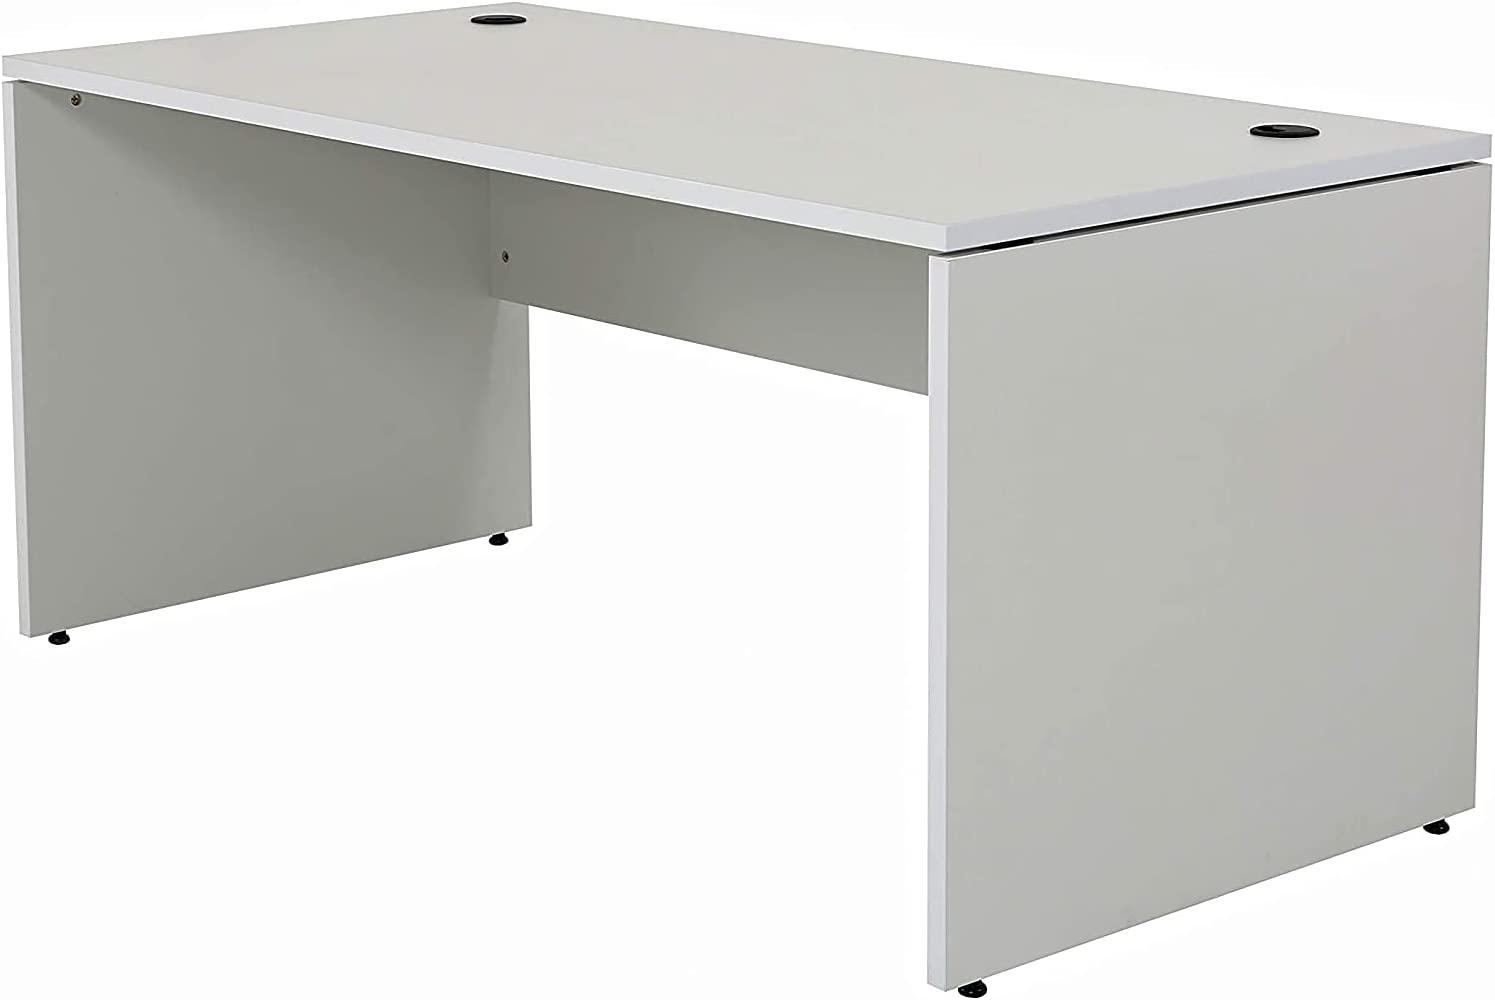 Furni24 Schreibtisch fürs Arbeitszimmer und Home Office - Großer laminierter Computertisch aus Holz, 2 Kabeldurchlässe und mit verstellbarem Metall kabelkanal-Nuvi (Grau, Kabelkanal 160x80x75 cm) Bild 1